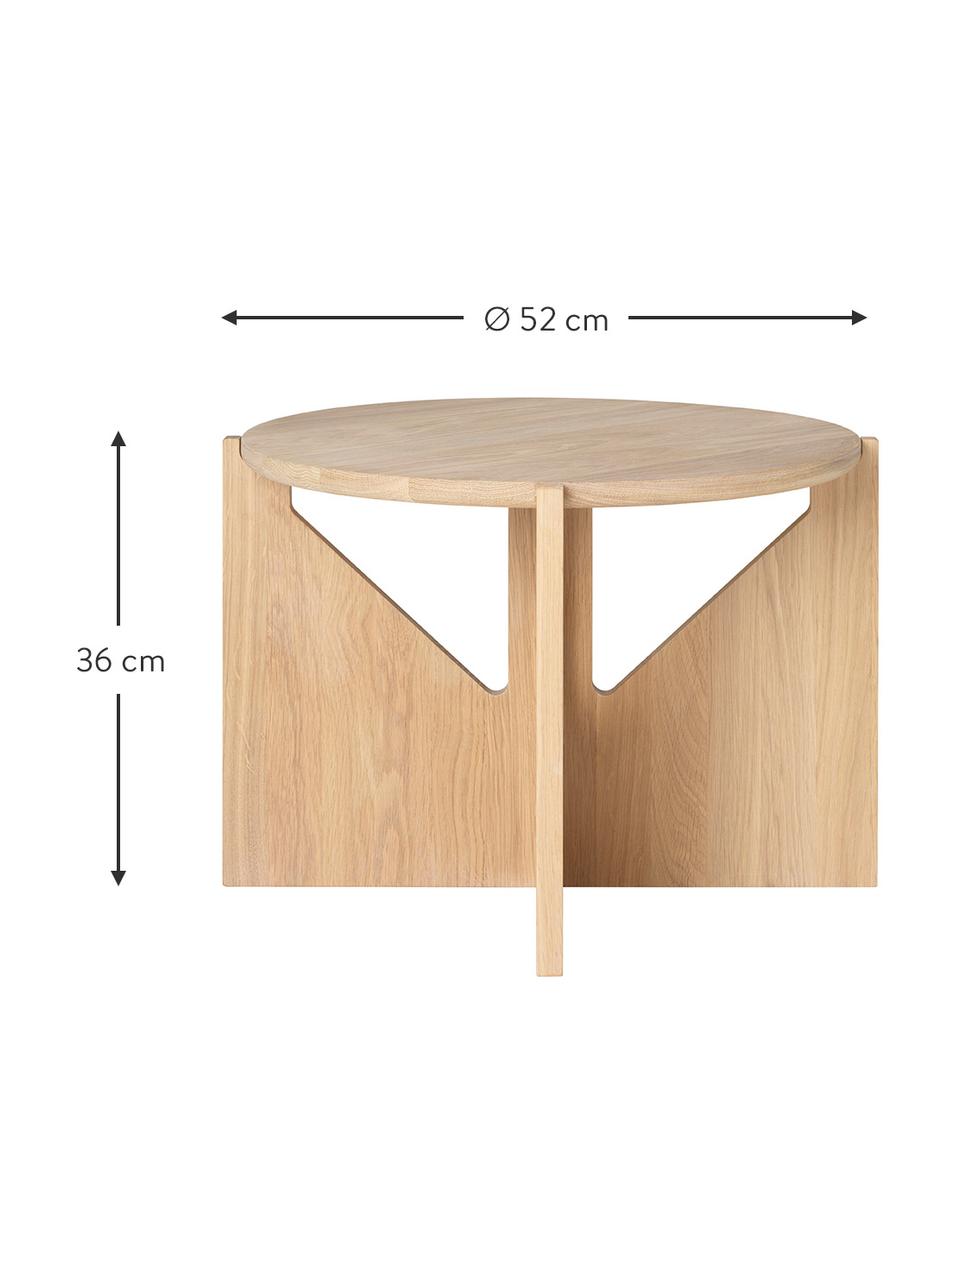 Table basse ronde en bois de chêne Future, Bois de chêne massif, certifié FSC, Bois de chêne, Ø 52 cm